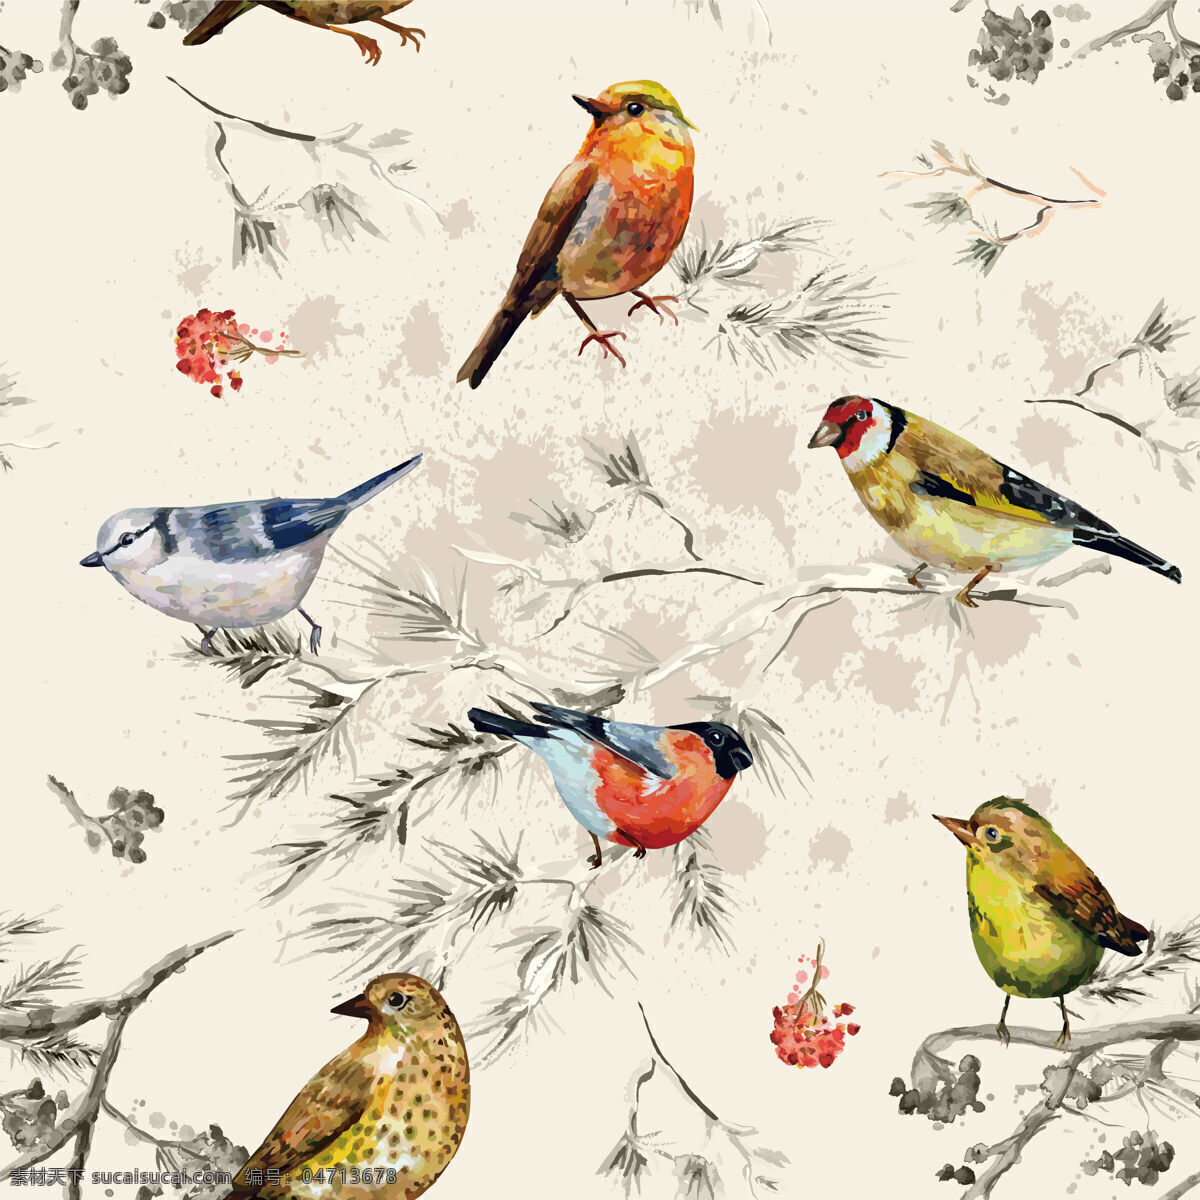 精致 风格 手绘 鸟类 壁纸 图案 装饰设计 浅粉底色 壁纸图案